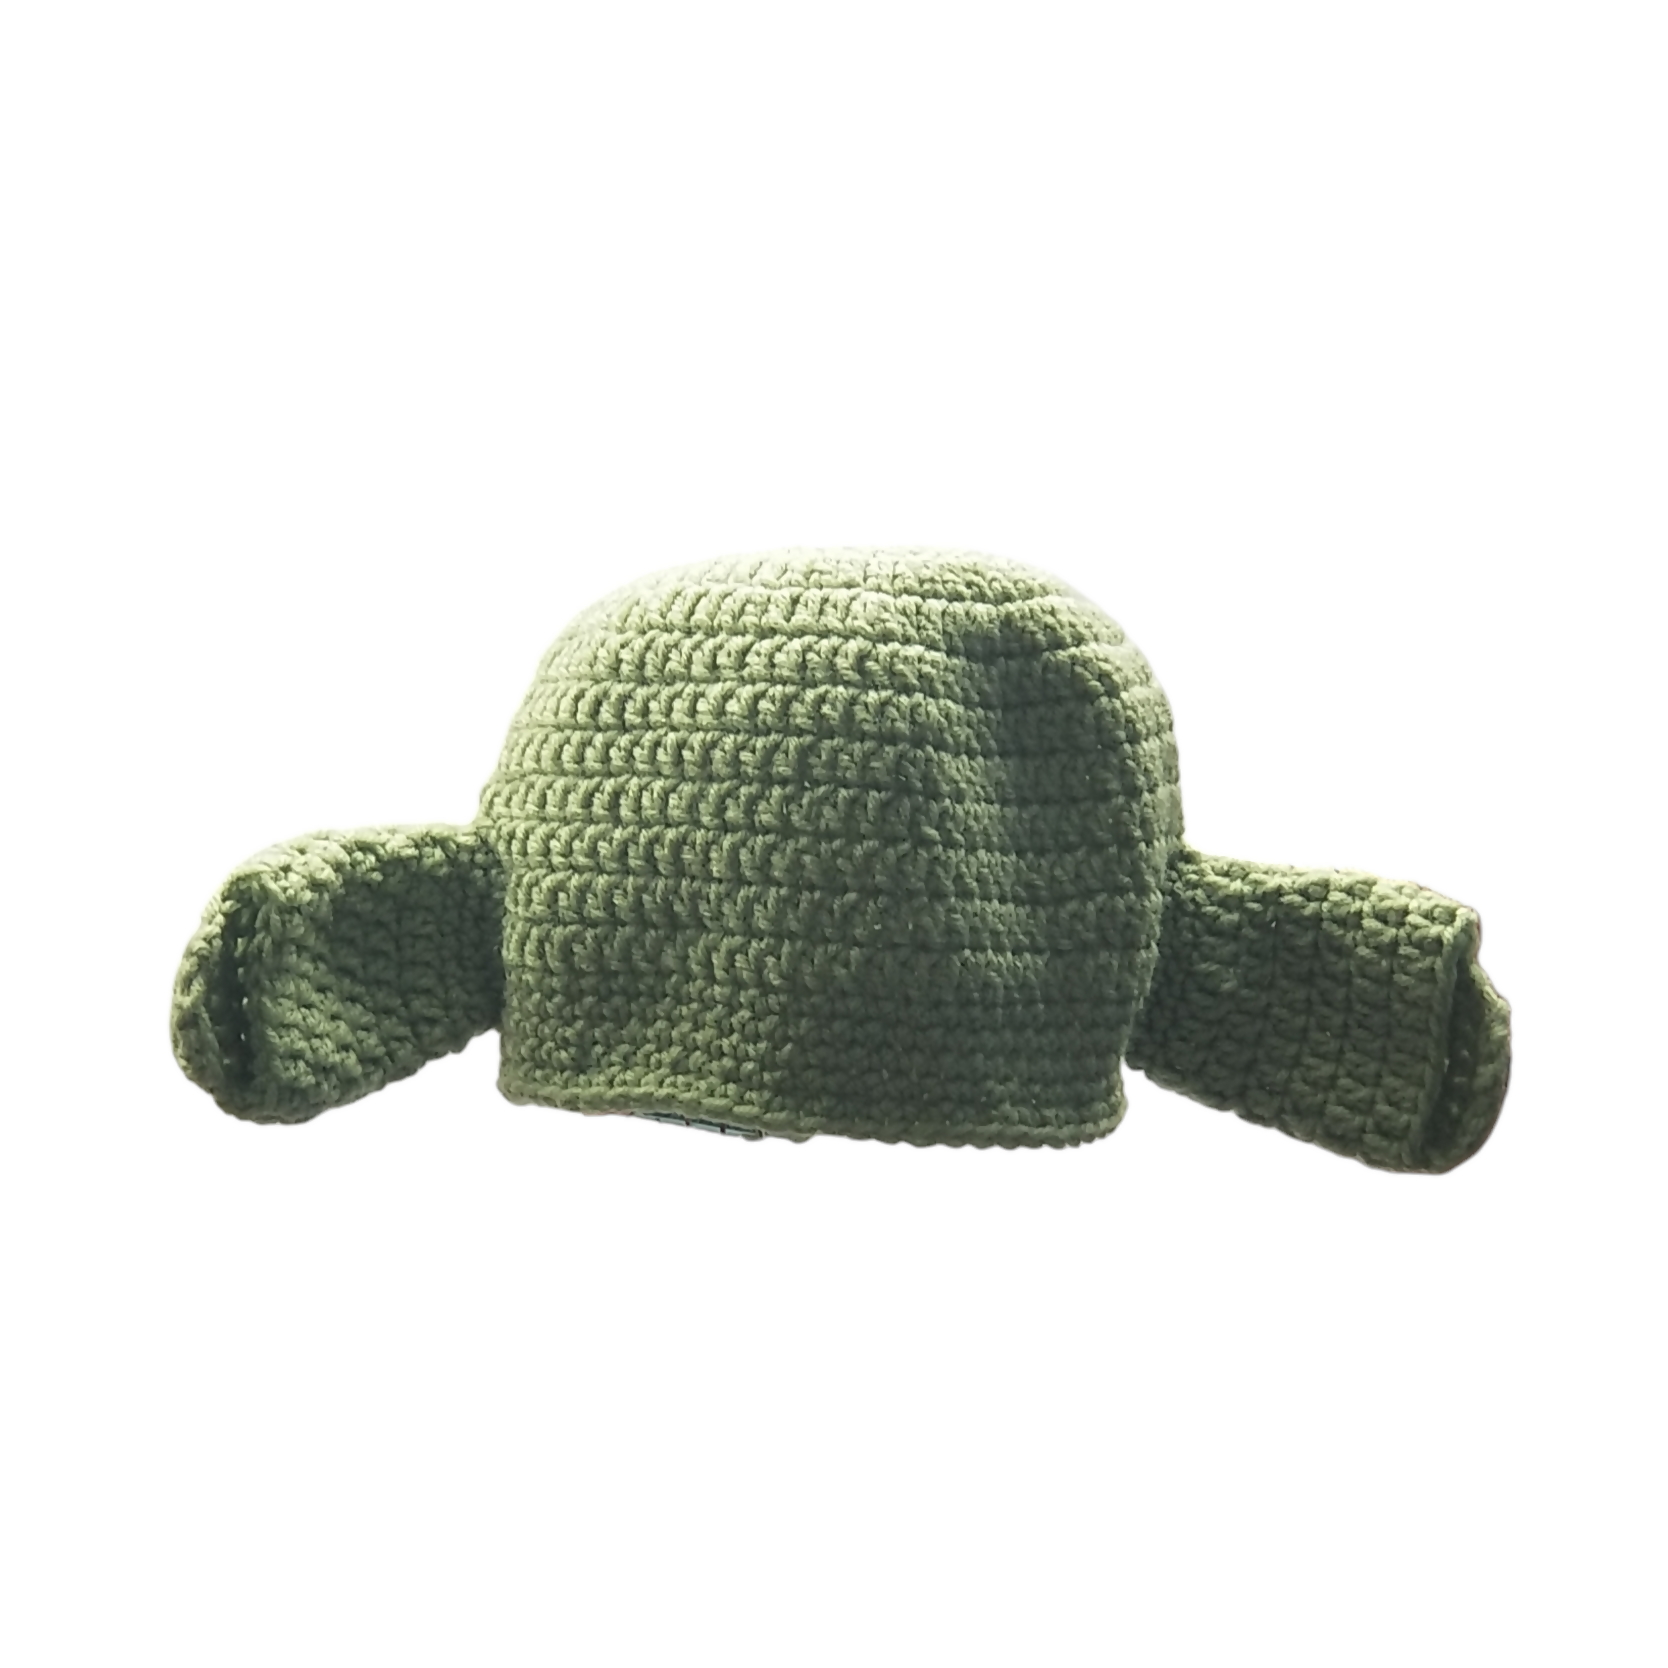 Crochet Shrek Hat